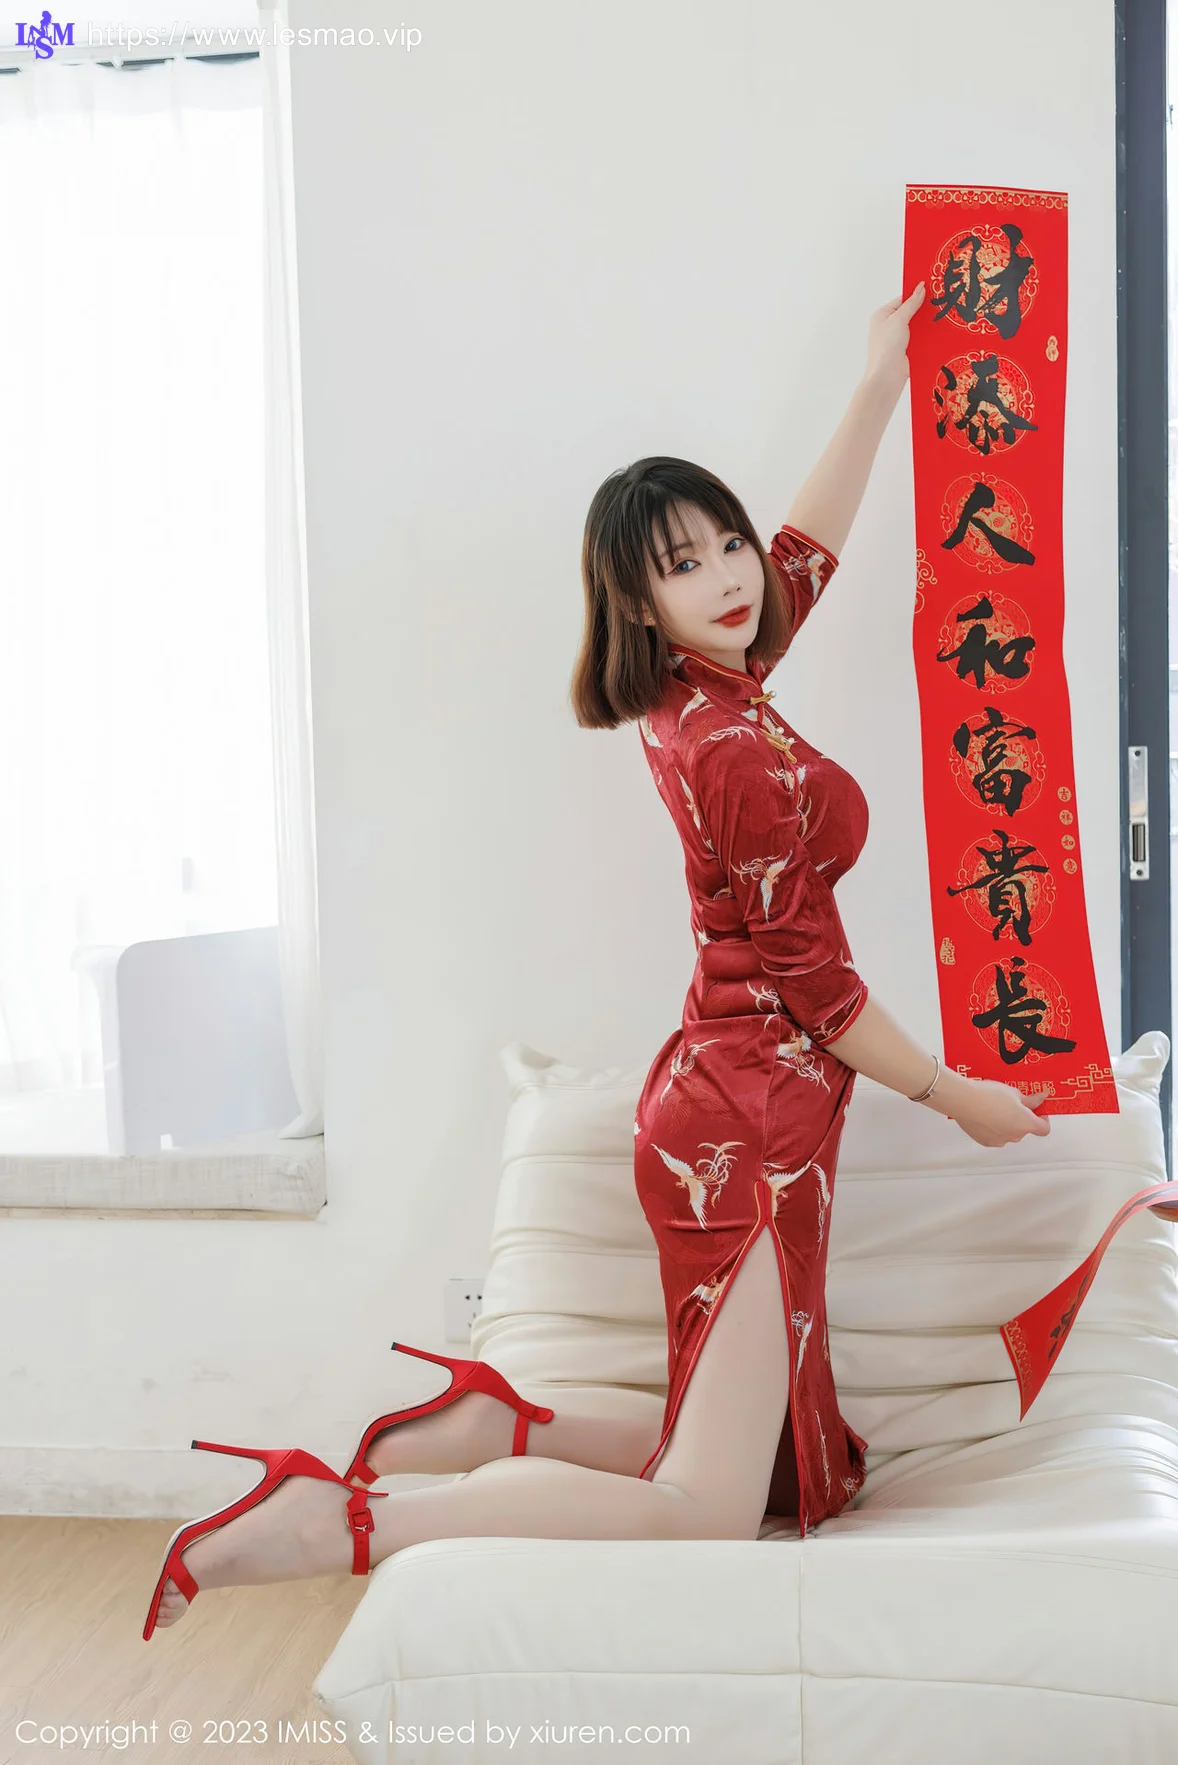 IMiss 爱蜜社 Vol.716 Evon陈赞之 红色旗袍最新性感写真 - 5